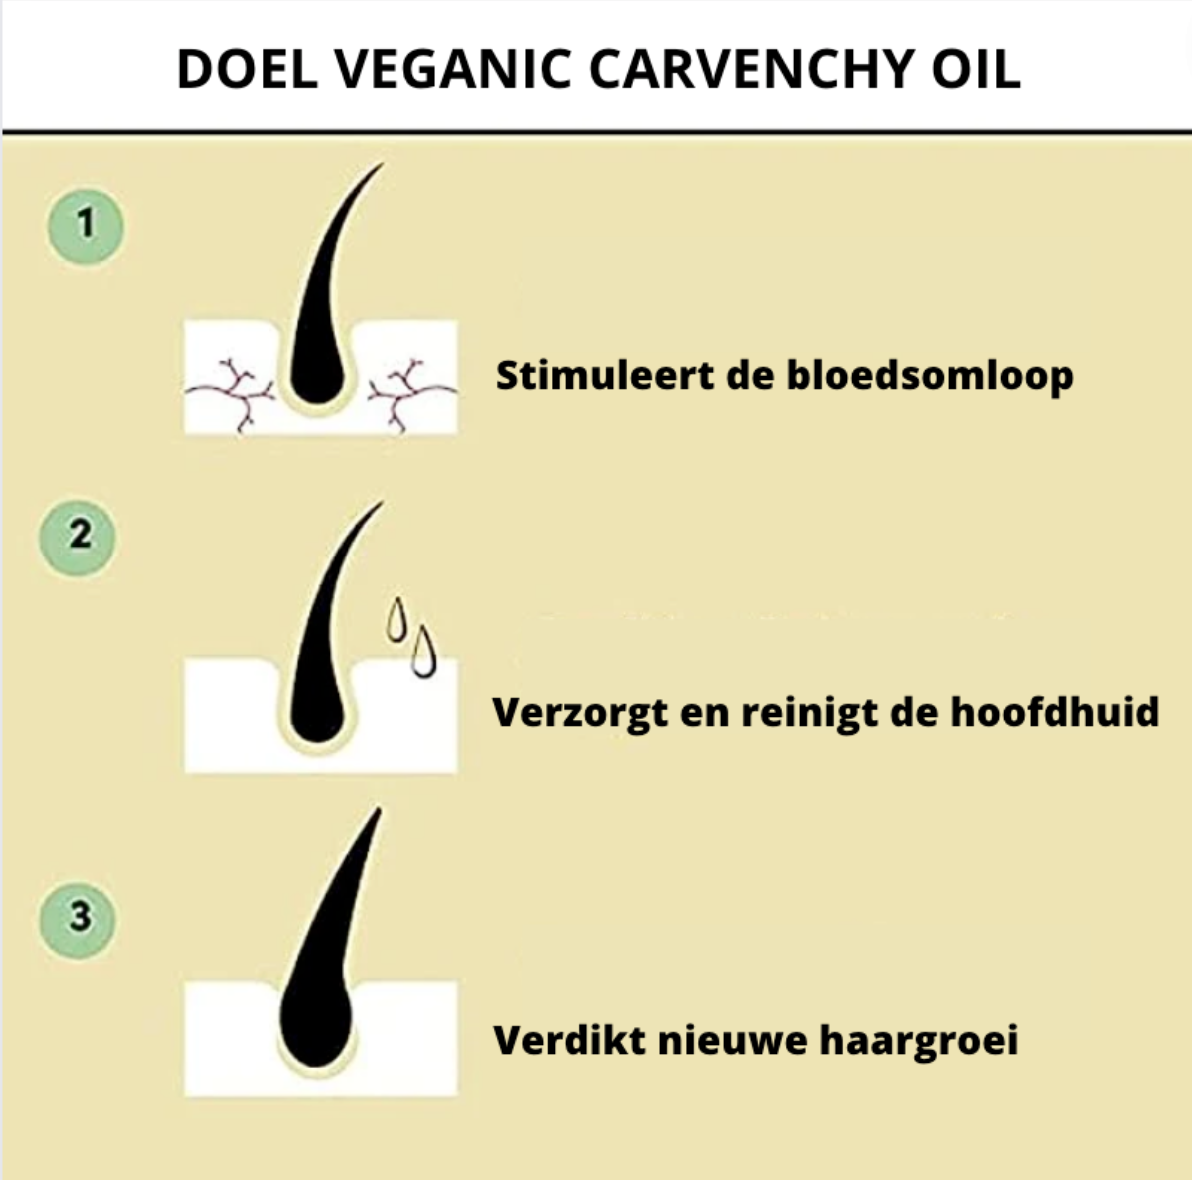 Olio naturale veganic per la crescita dei capelli | SOLO OGGI 1+1 GRATIS!